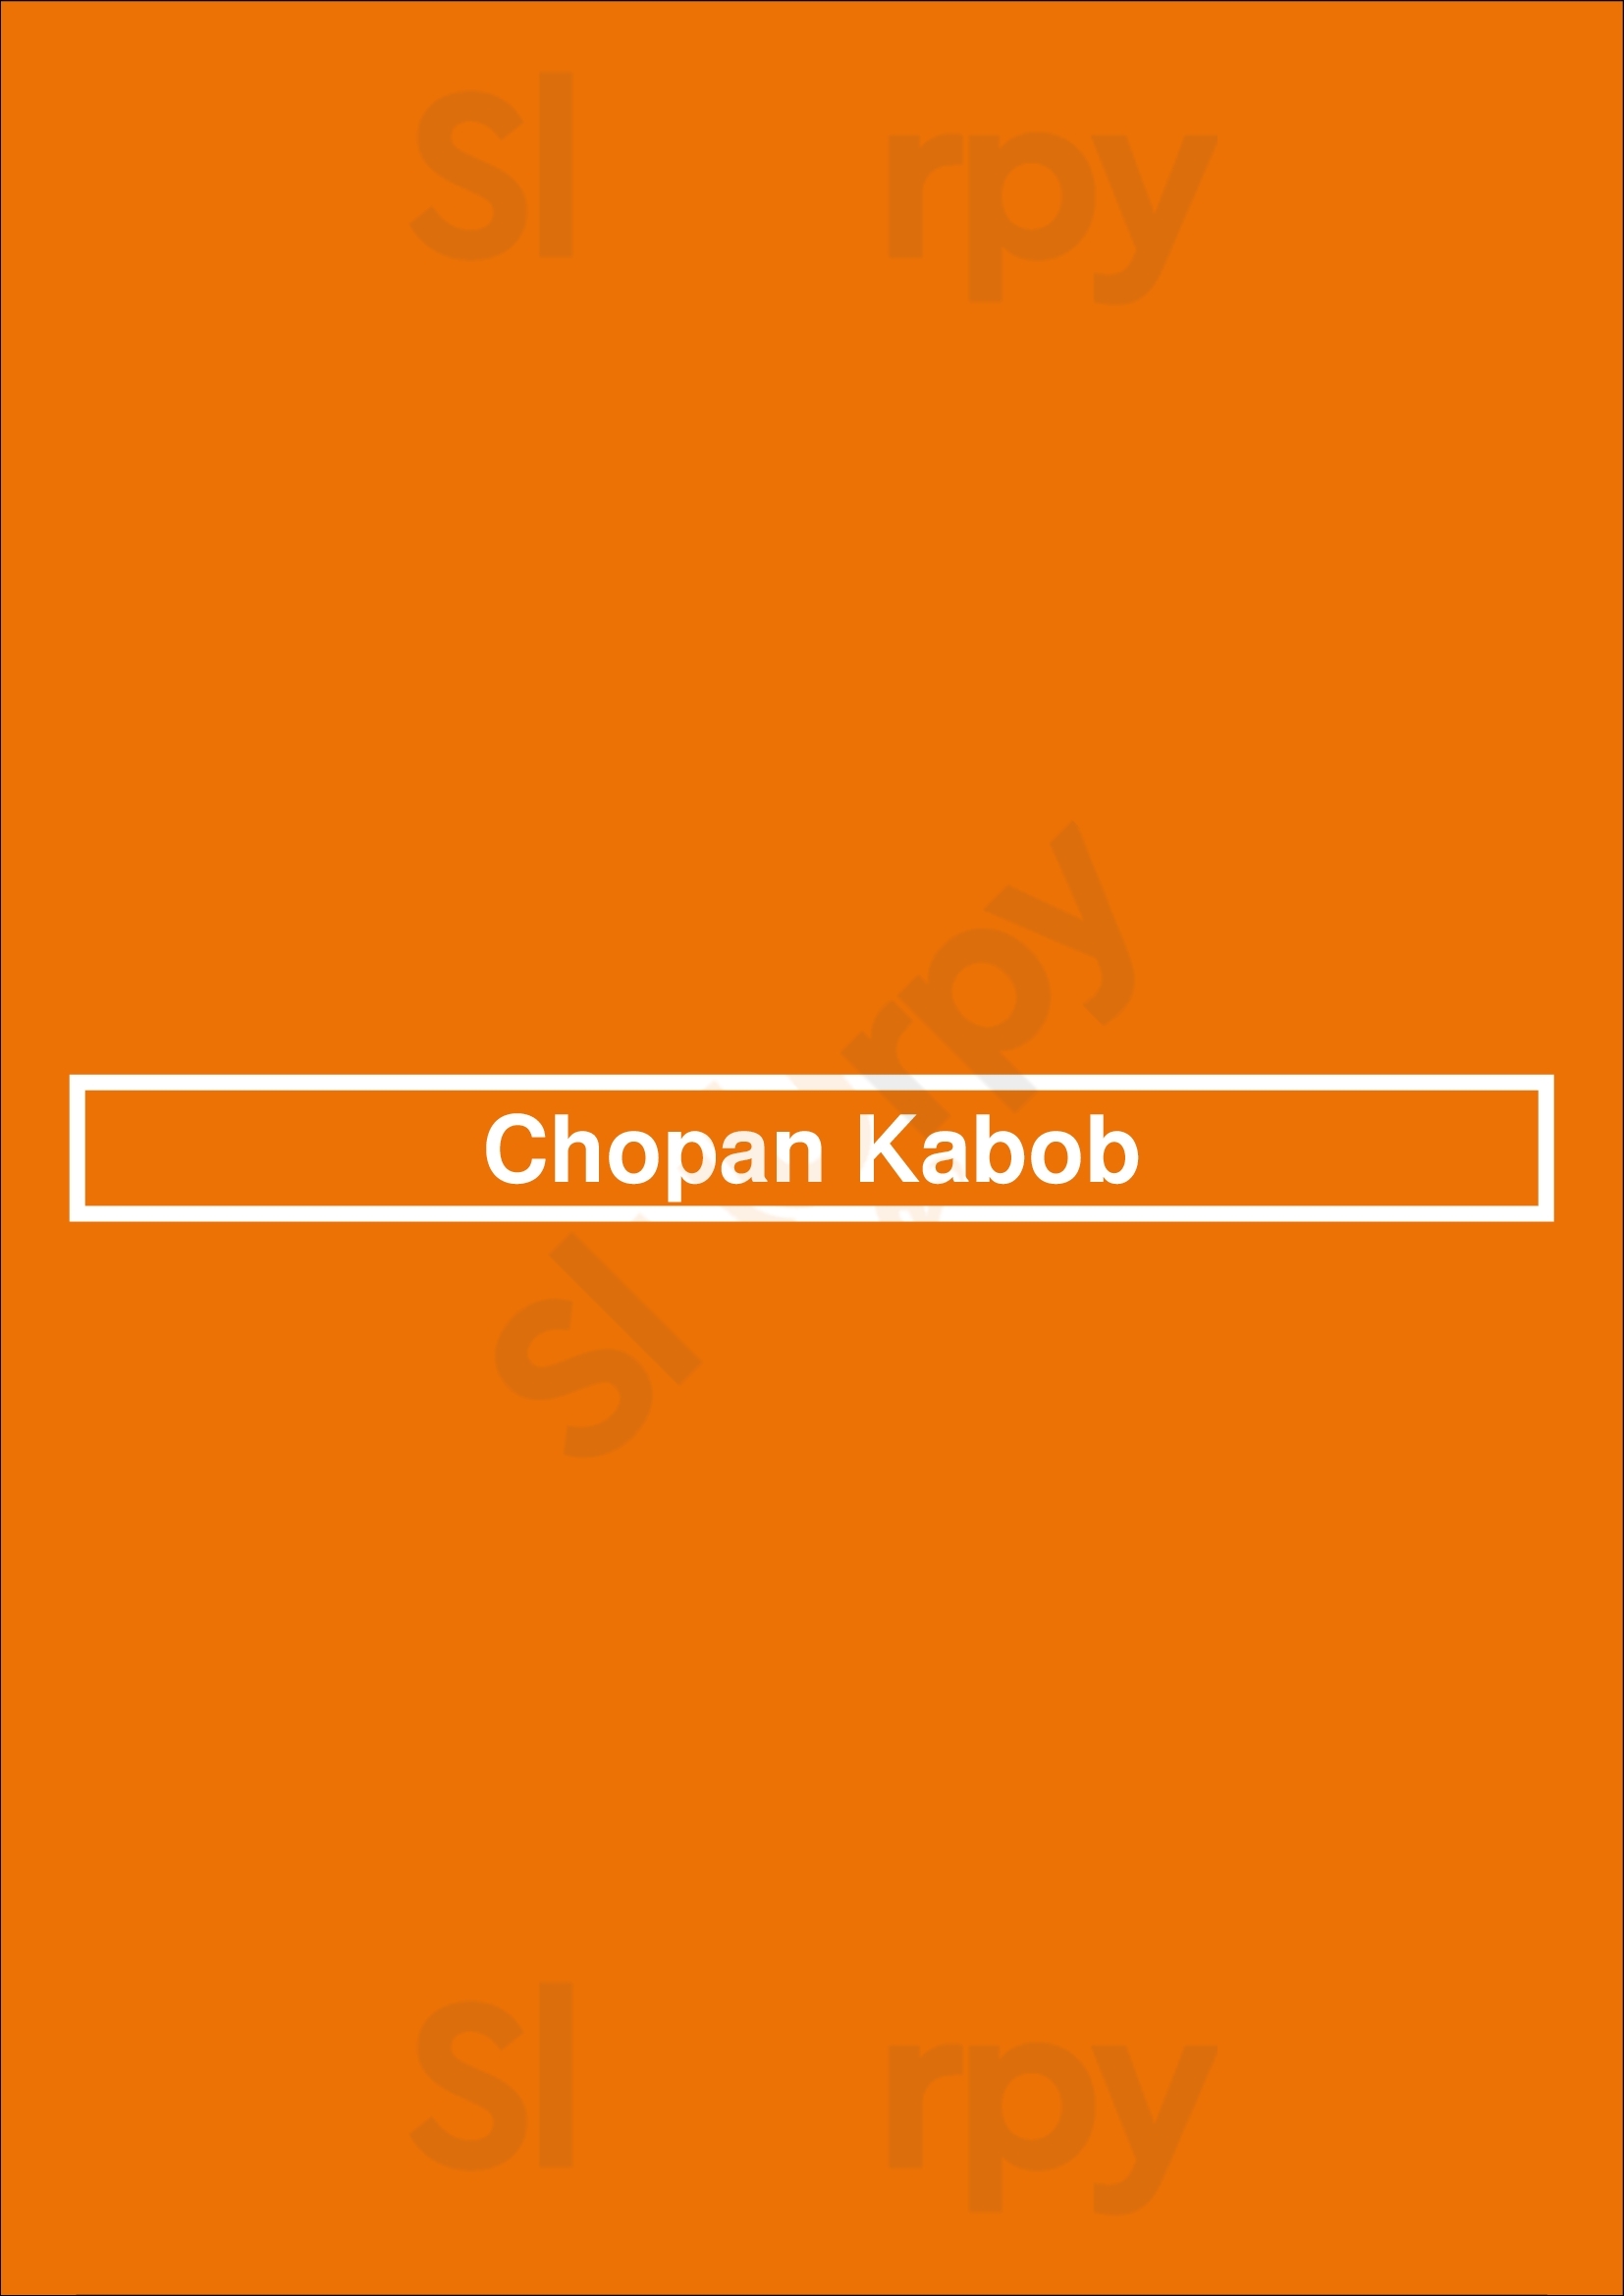 Chopan Kabob Kitchener Menu - 1